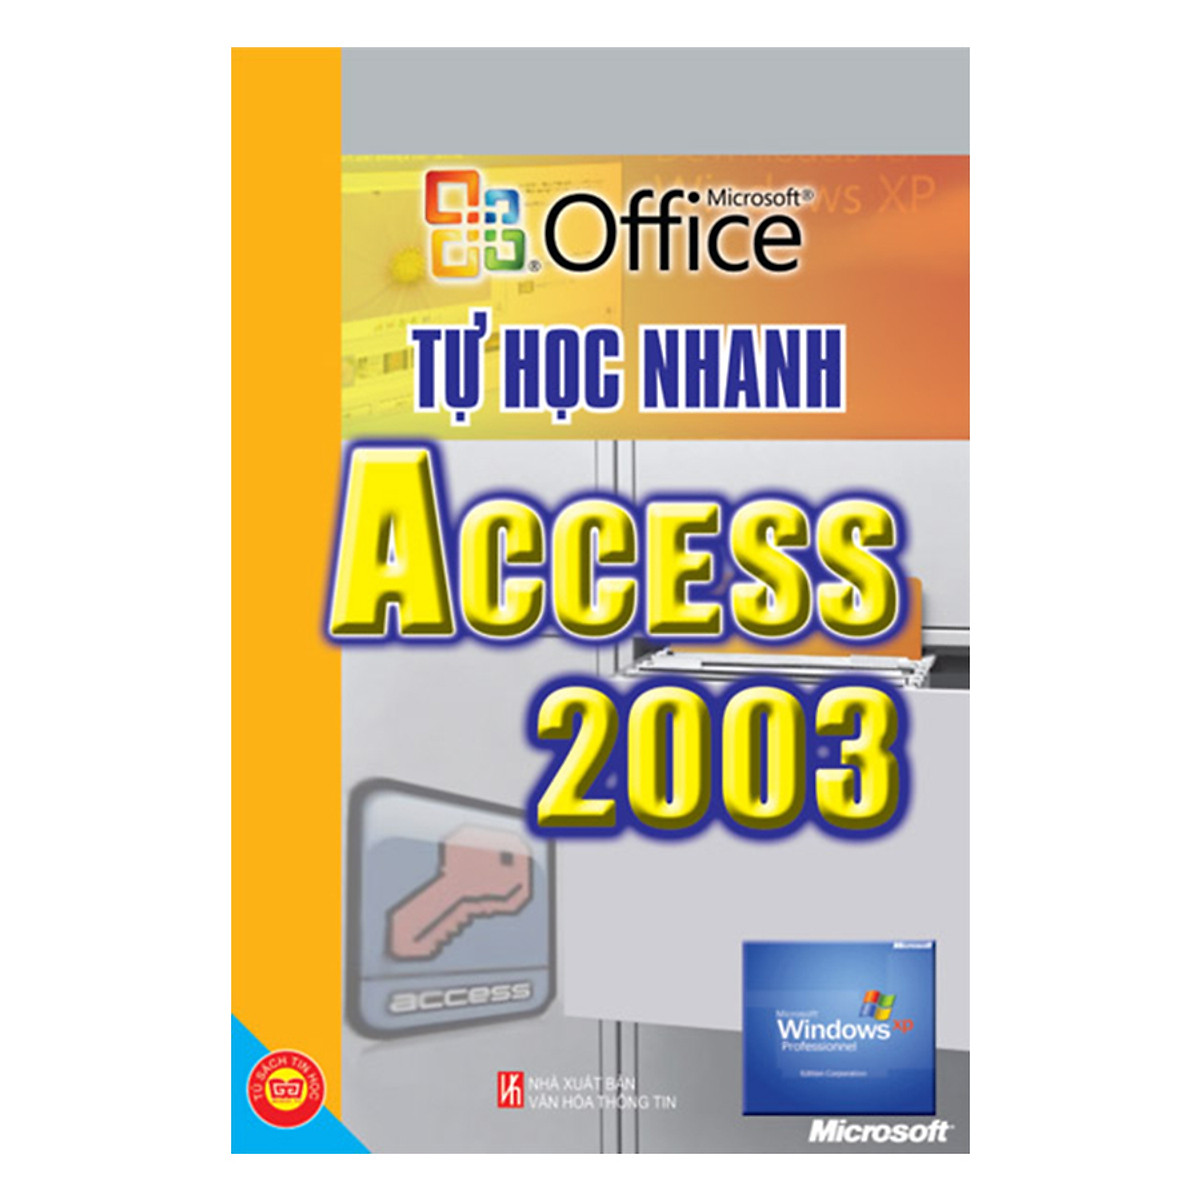 Học Nhanh Tin Học (THN Windows XP + THN Windows Vista + THN Access 2003 + THN Font Page 2003 + Hướng Dẫn Thiết Kế Website + THN Cách Làm Chủ Trên Google Và Yahoo)